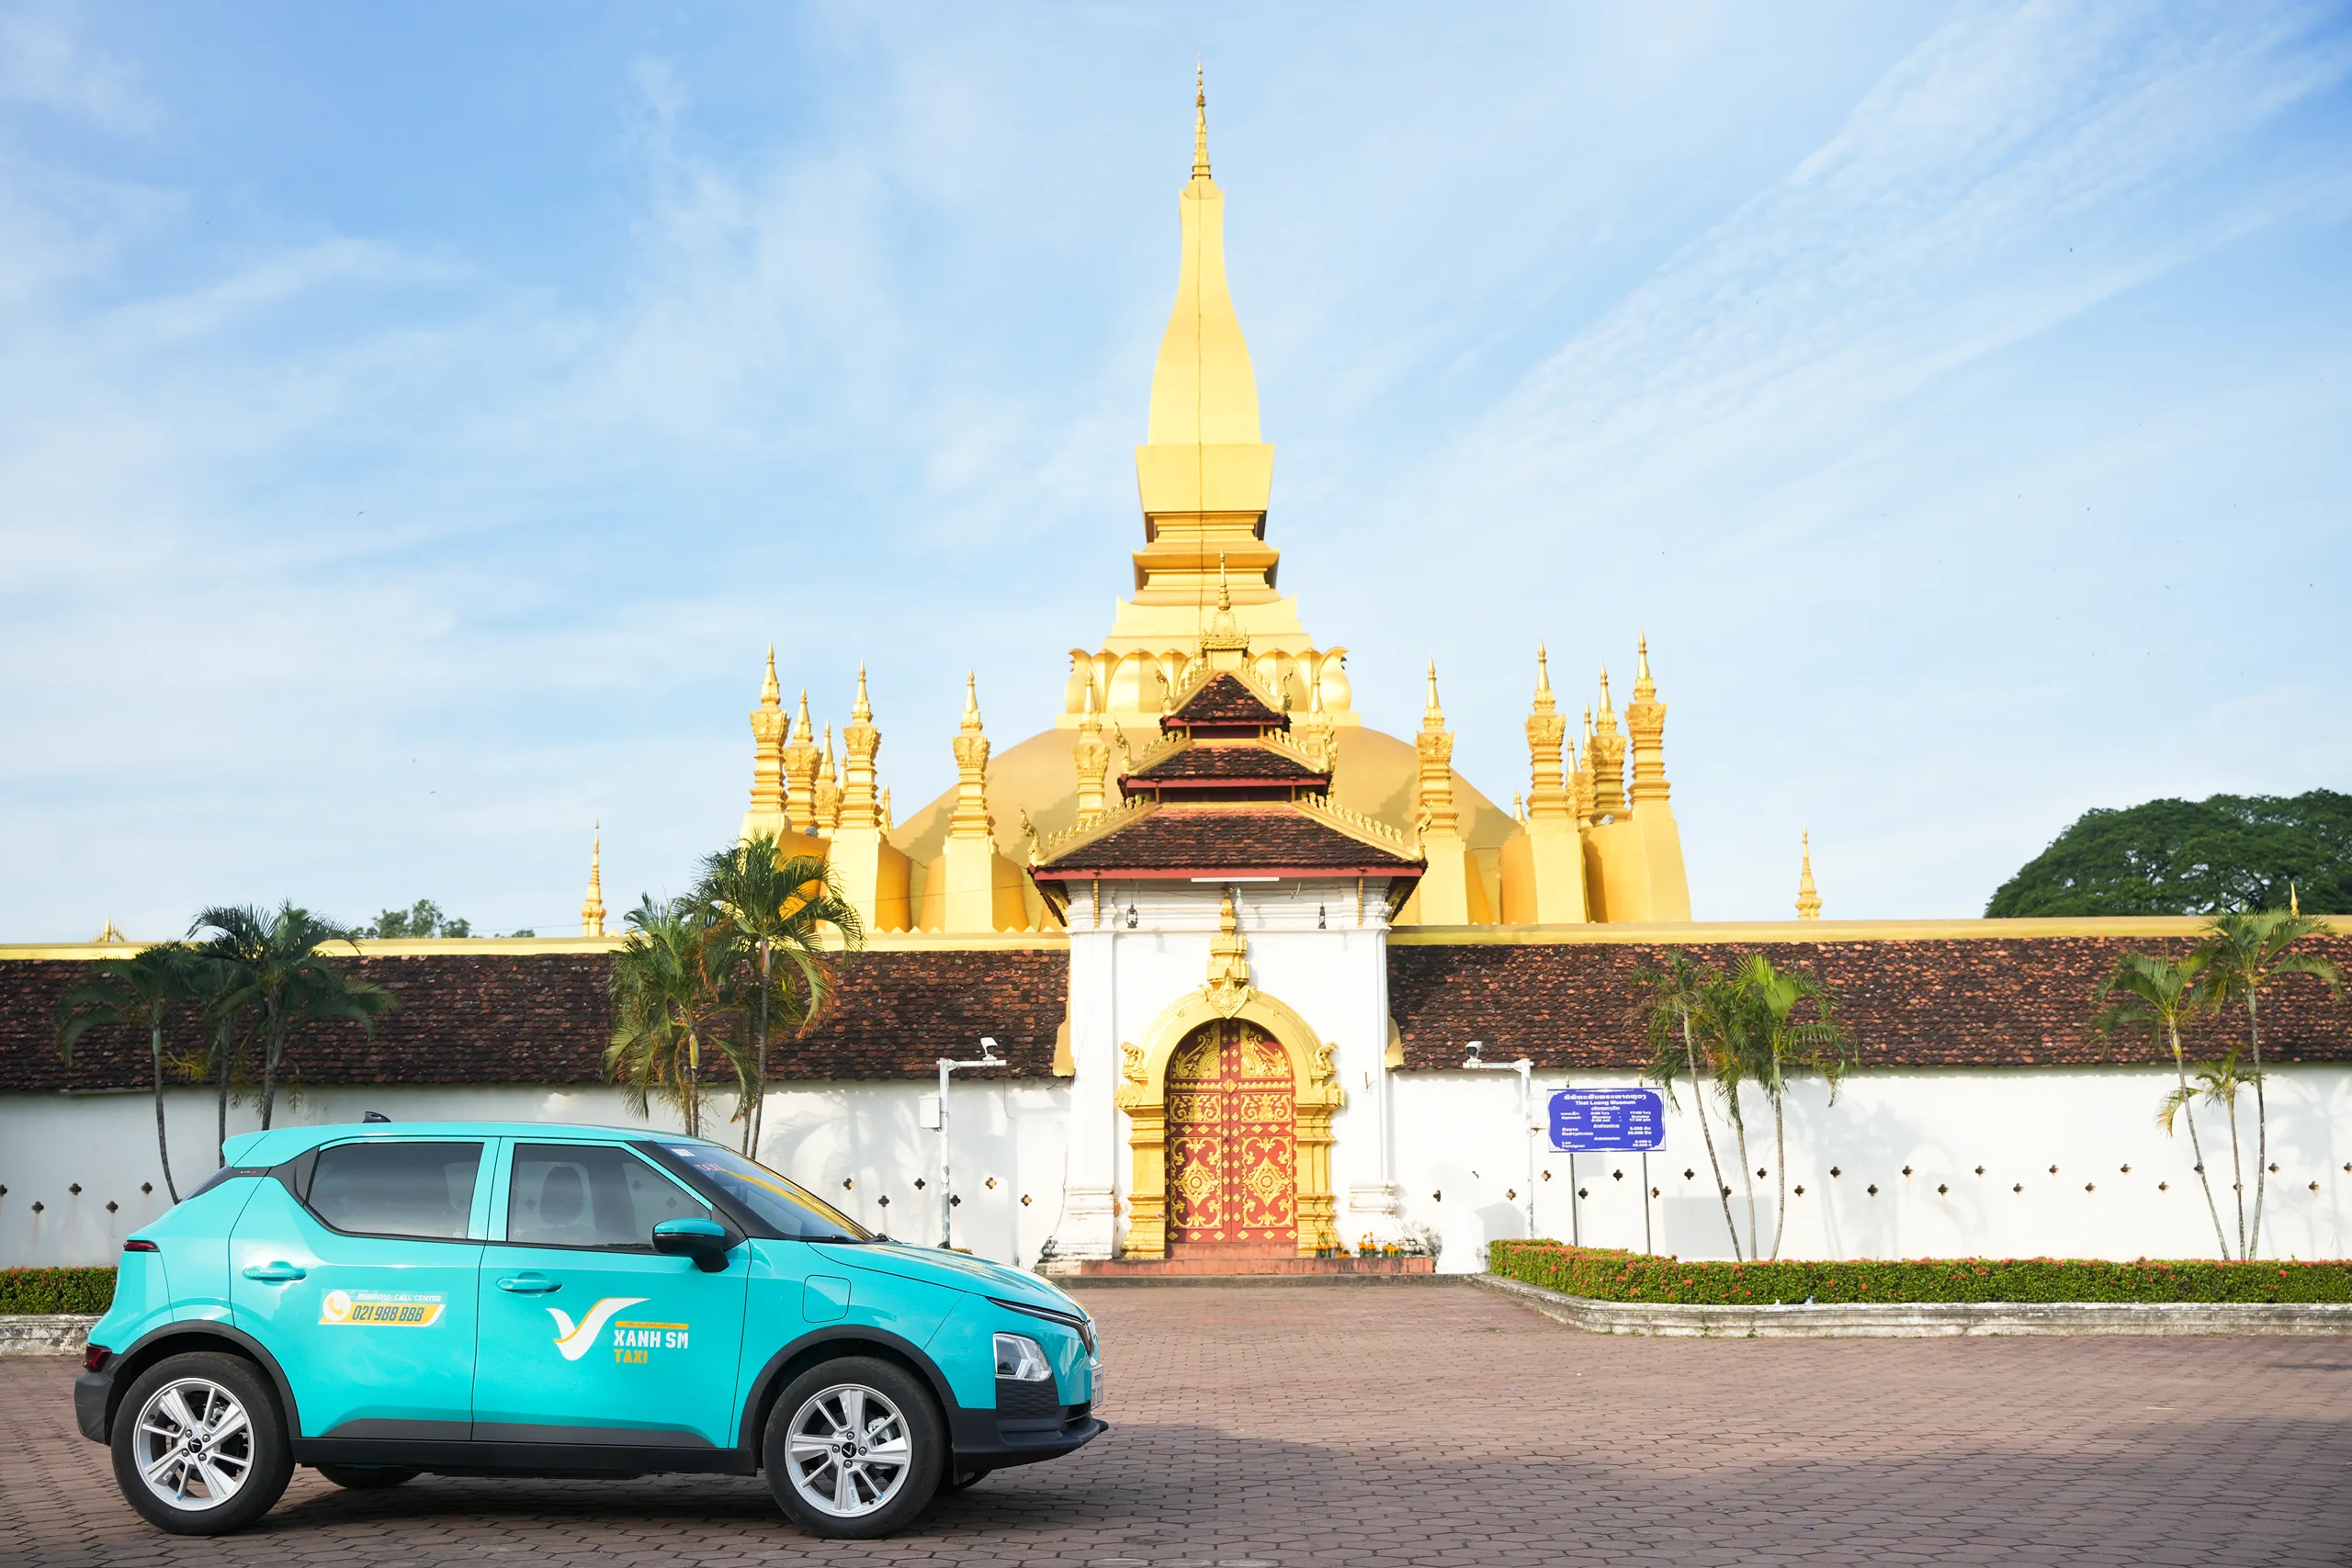 Taxi điện Xanh SM Lào bắt đầu hoạt động, tạo cơ hội việc làm cho hàng nghìn lao động địa phương